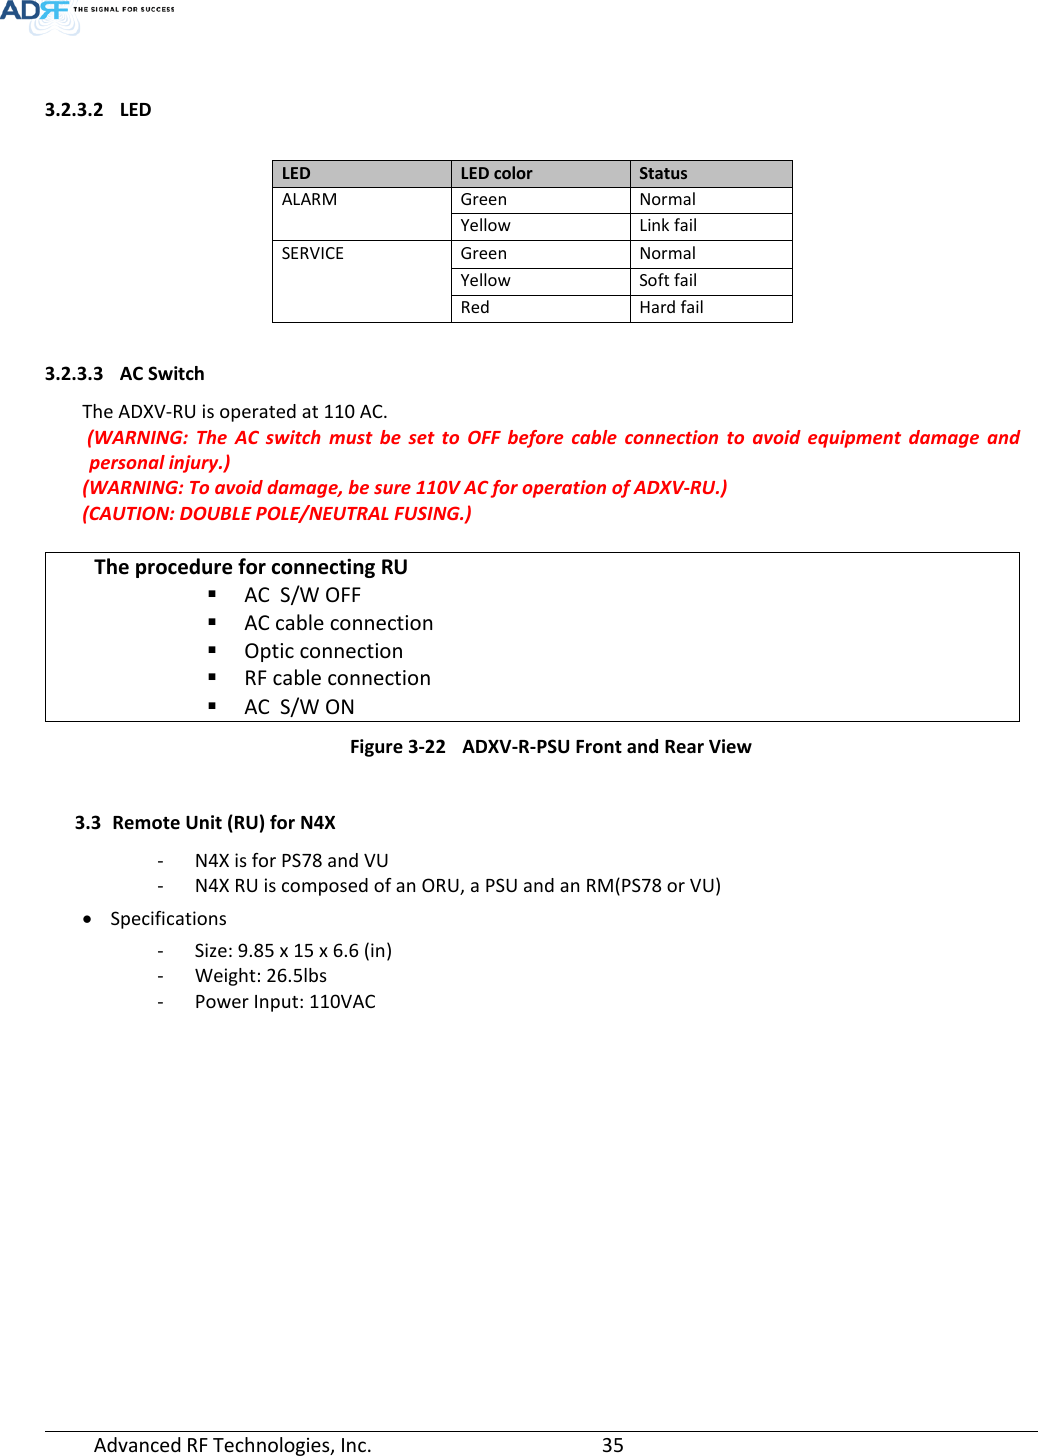 Page 35 of ADRF KOREA ADXV-R-25VUNA DAS (Distributed Antenna System) User Manual ADXV DAS